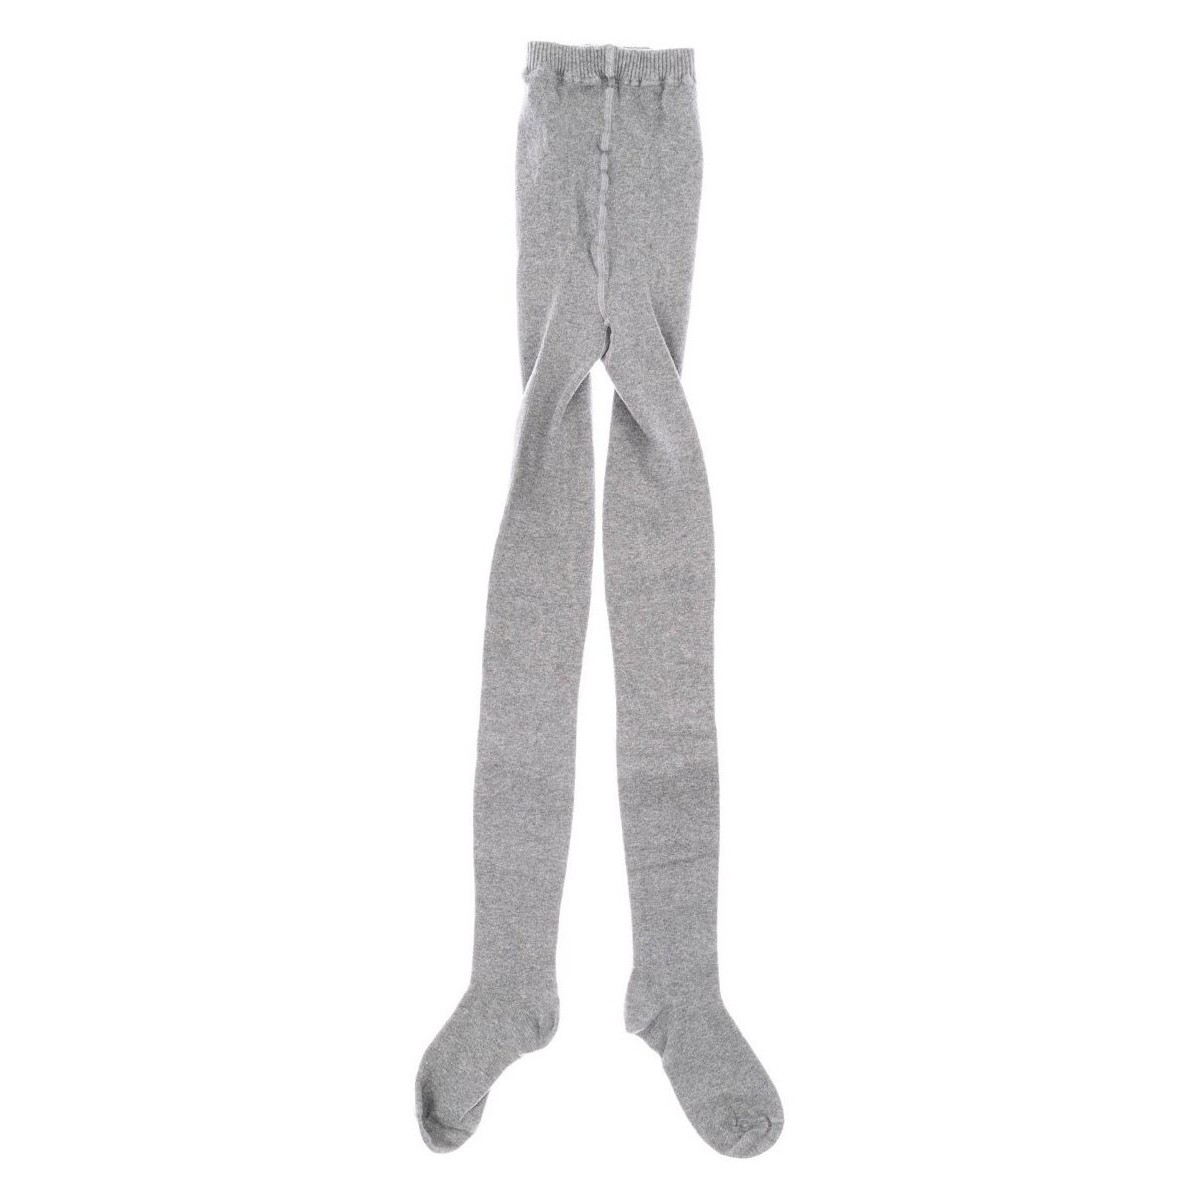 Unterwäsche Mädchen Strumpfwaren  Marie Claire 2501-GRIS Grau